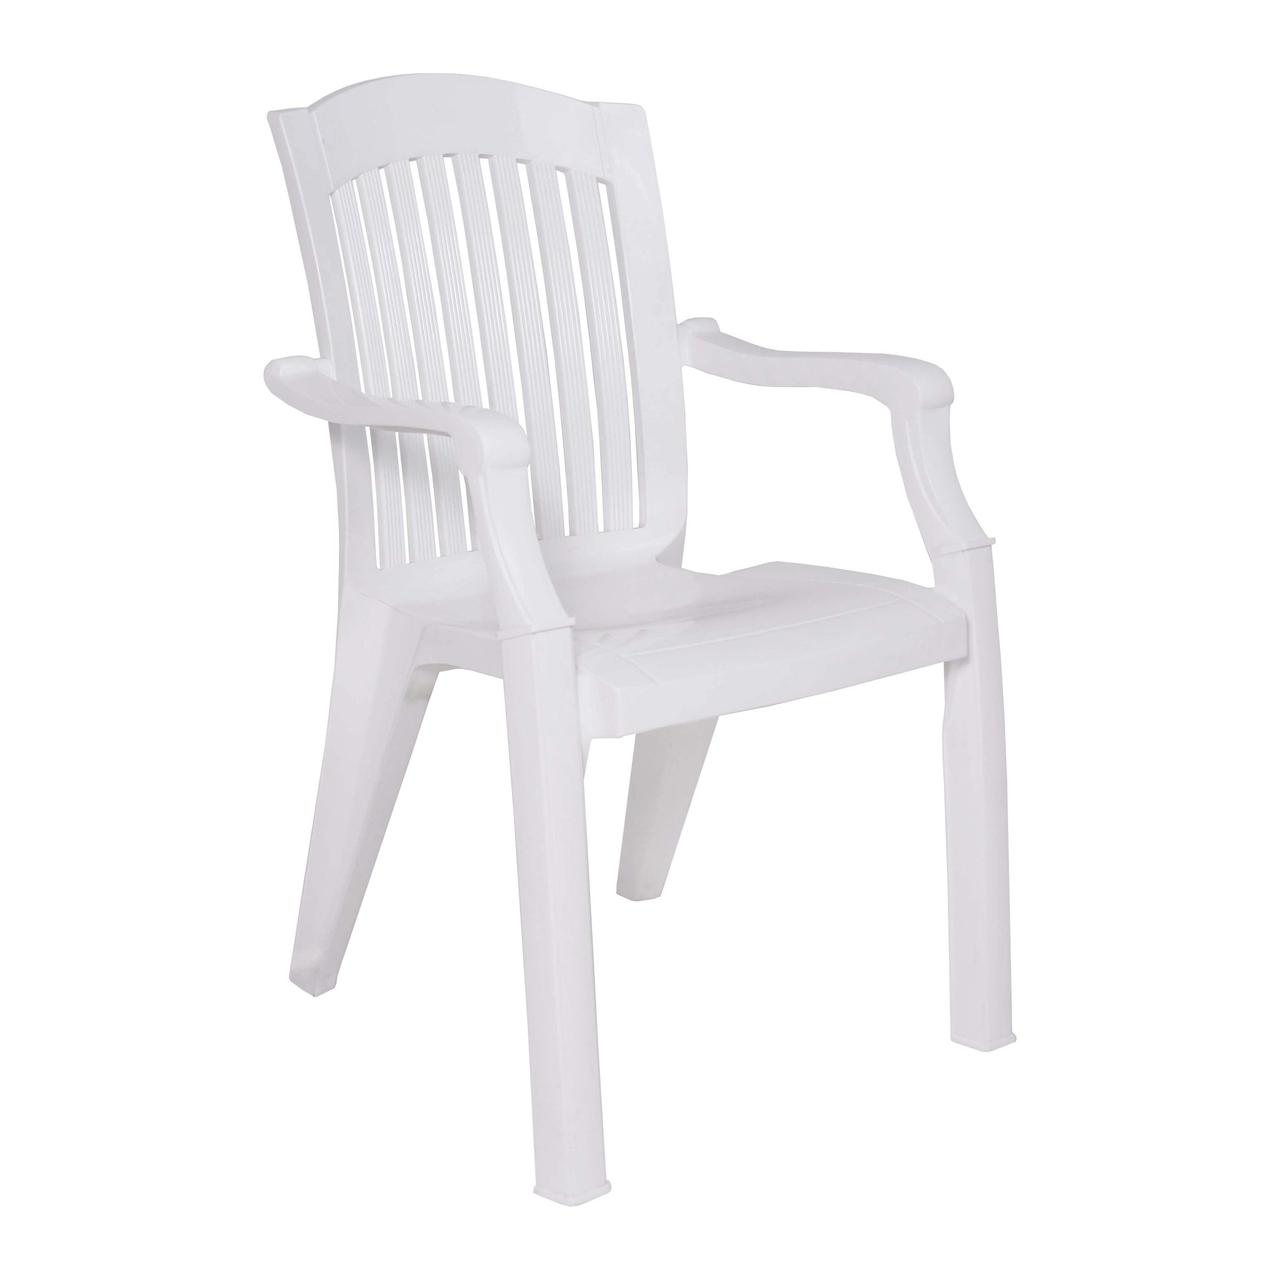 Кресло садовое Премиум, белый, пластик